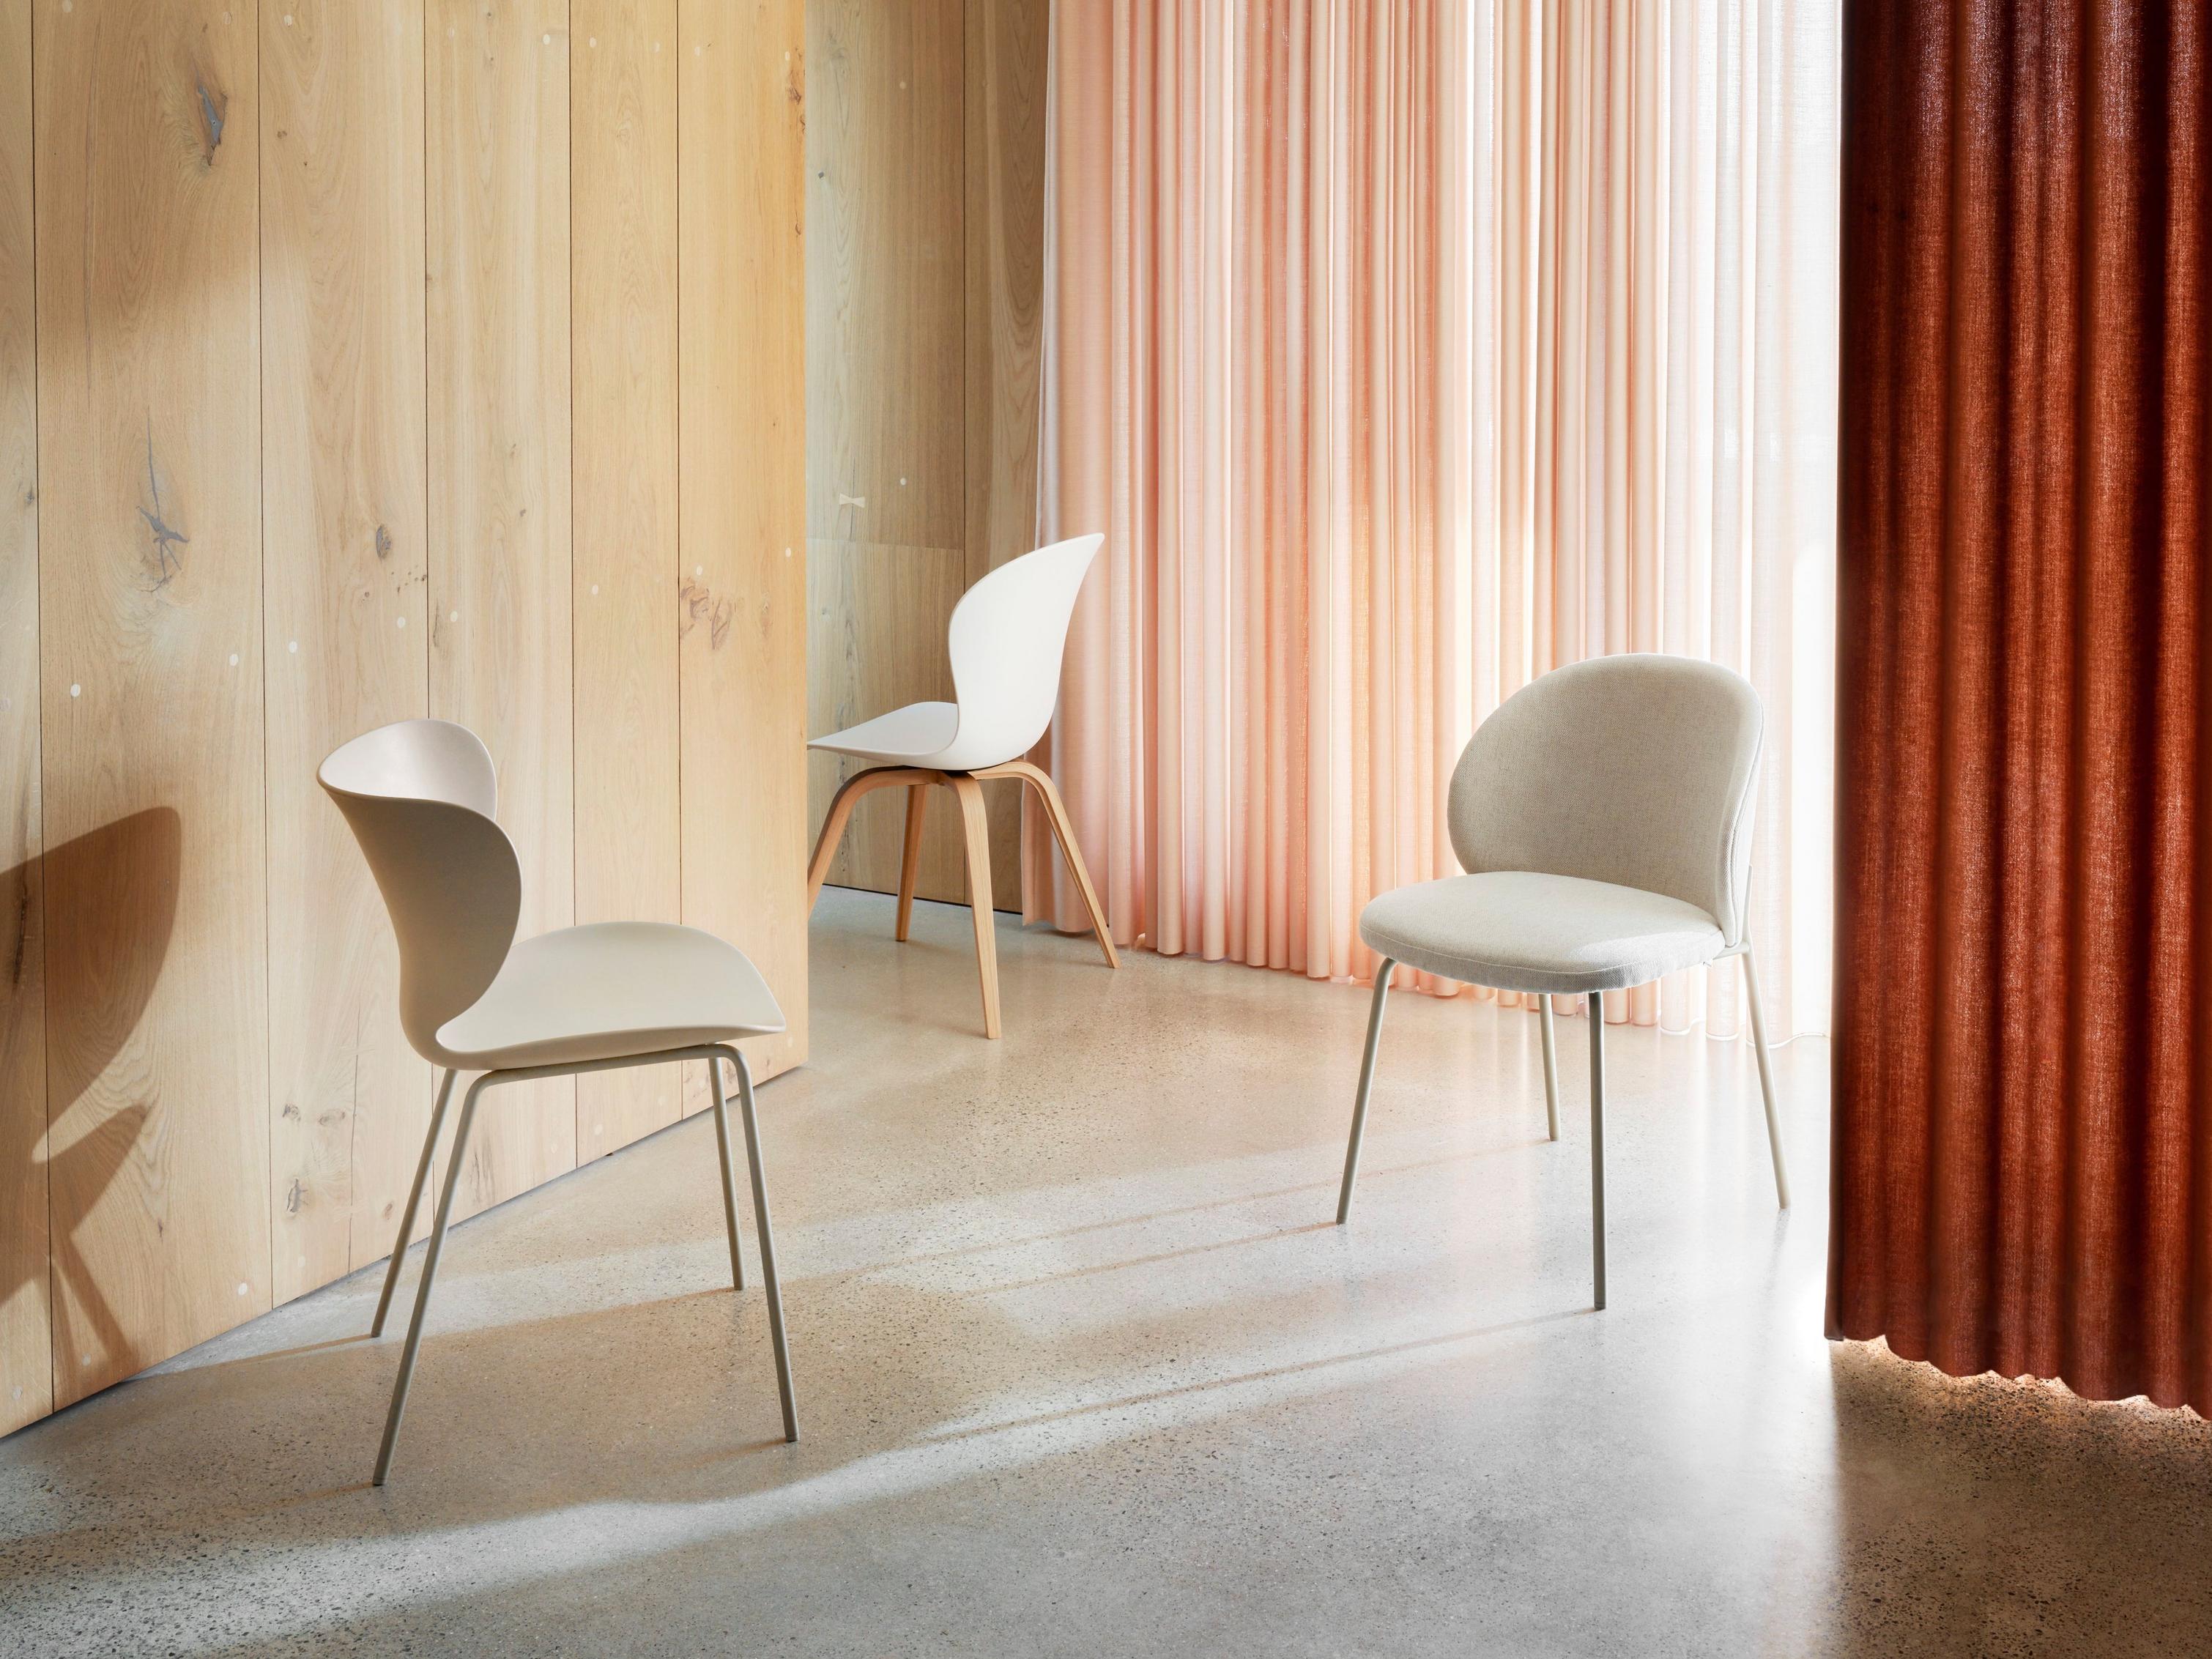 Sillas modernas en un espacio con pared de madera y cortinas color coral drapeadas.